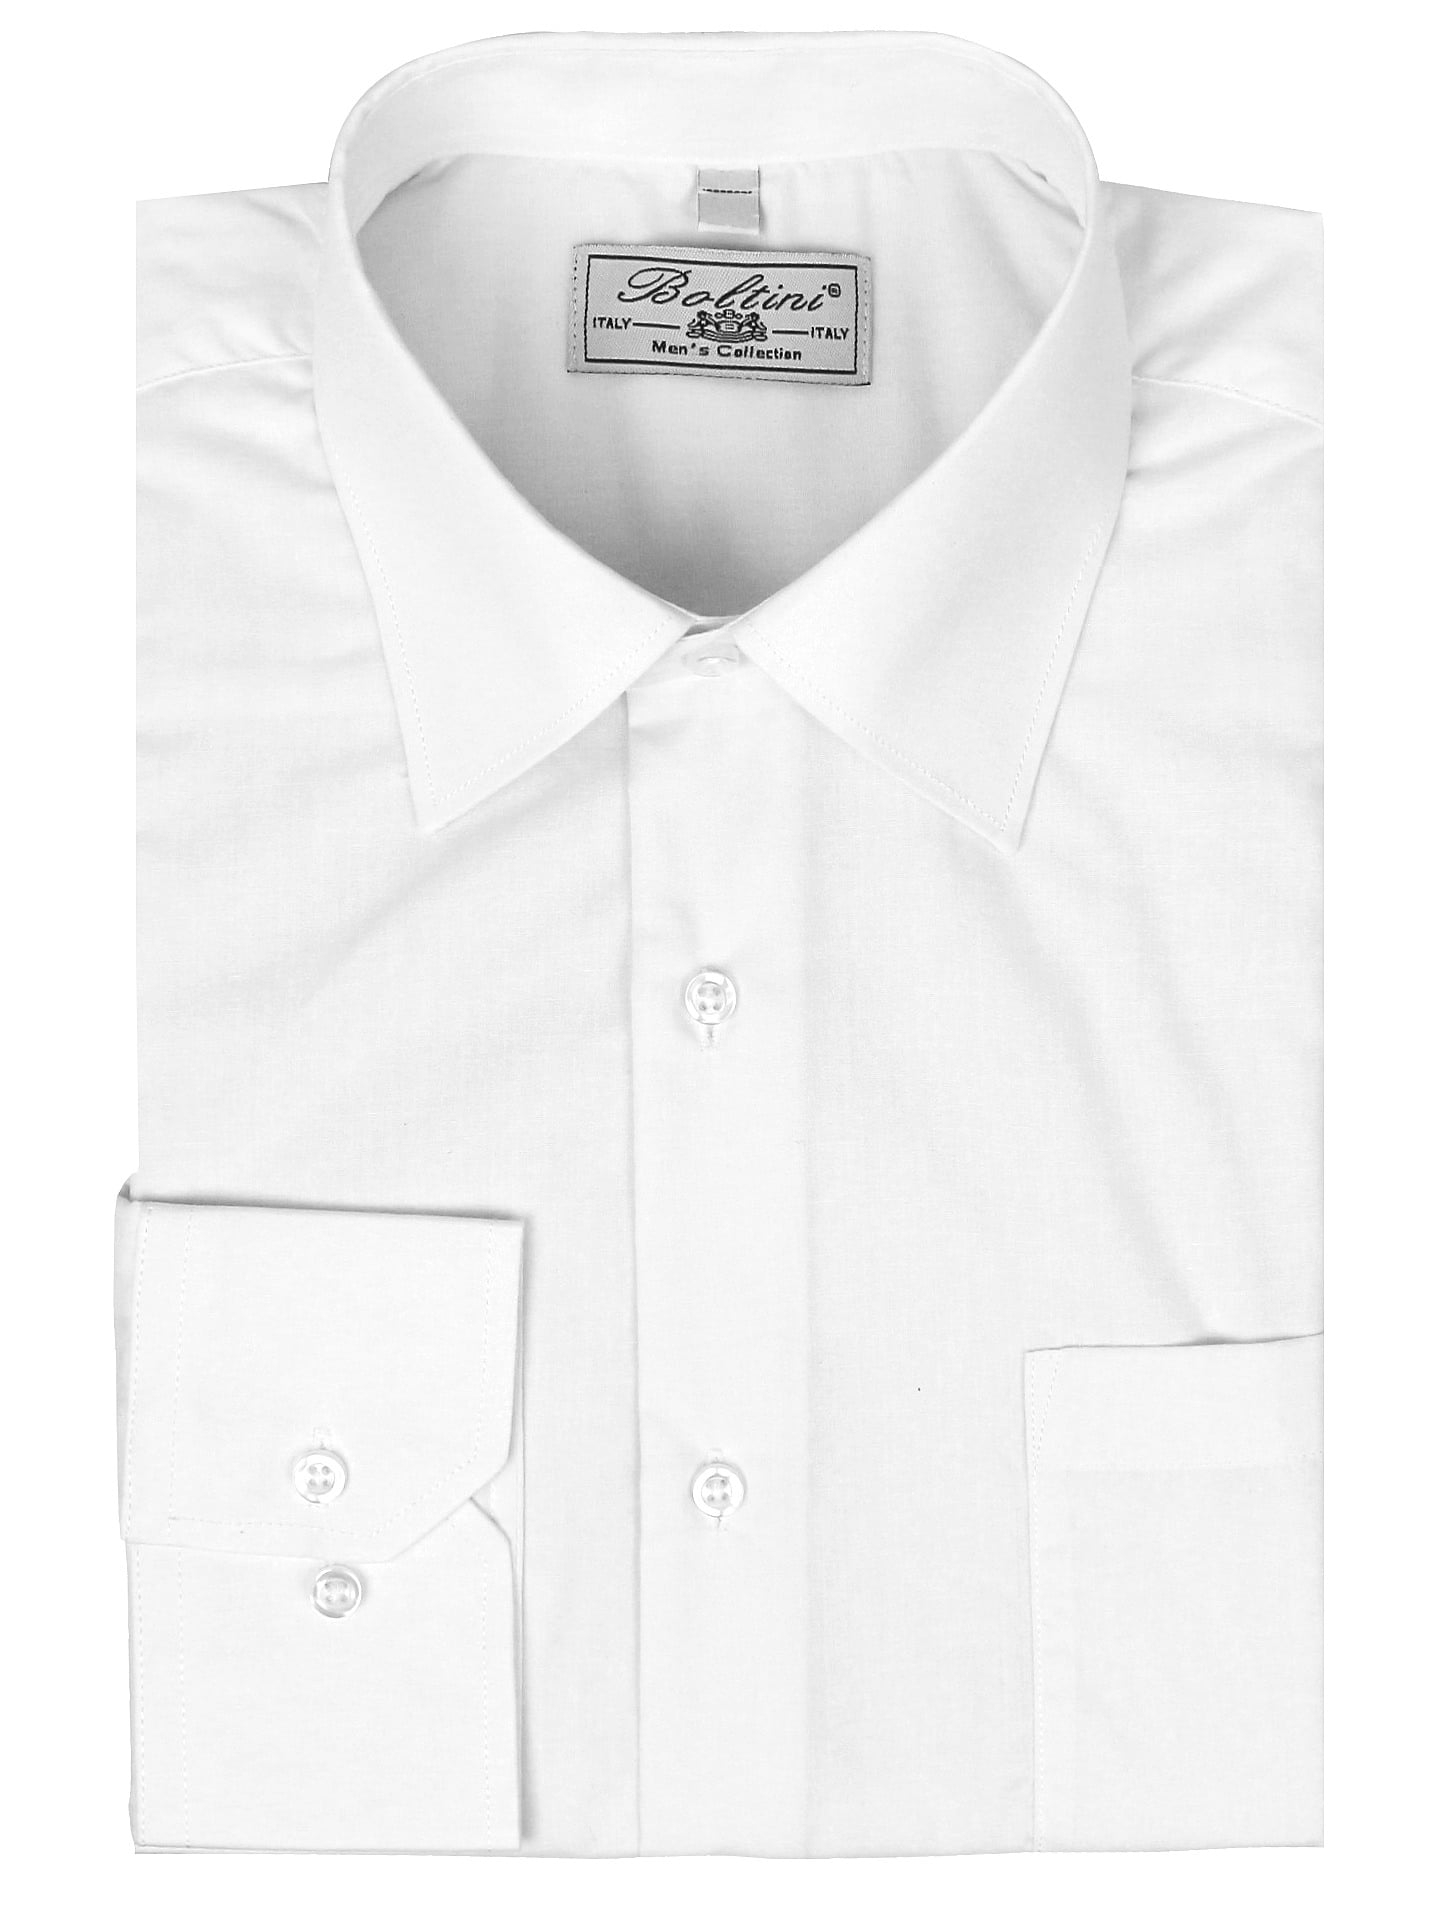 4xl white dress shirt